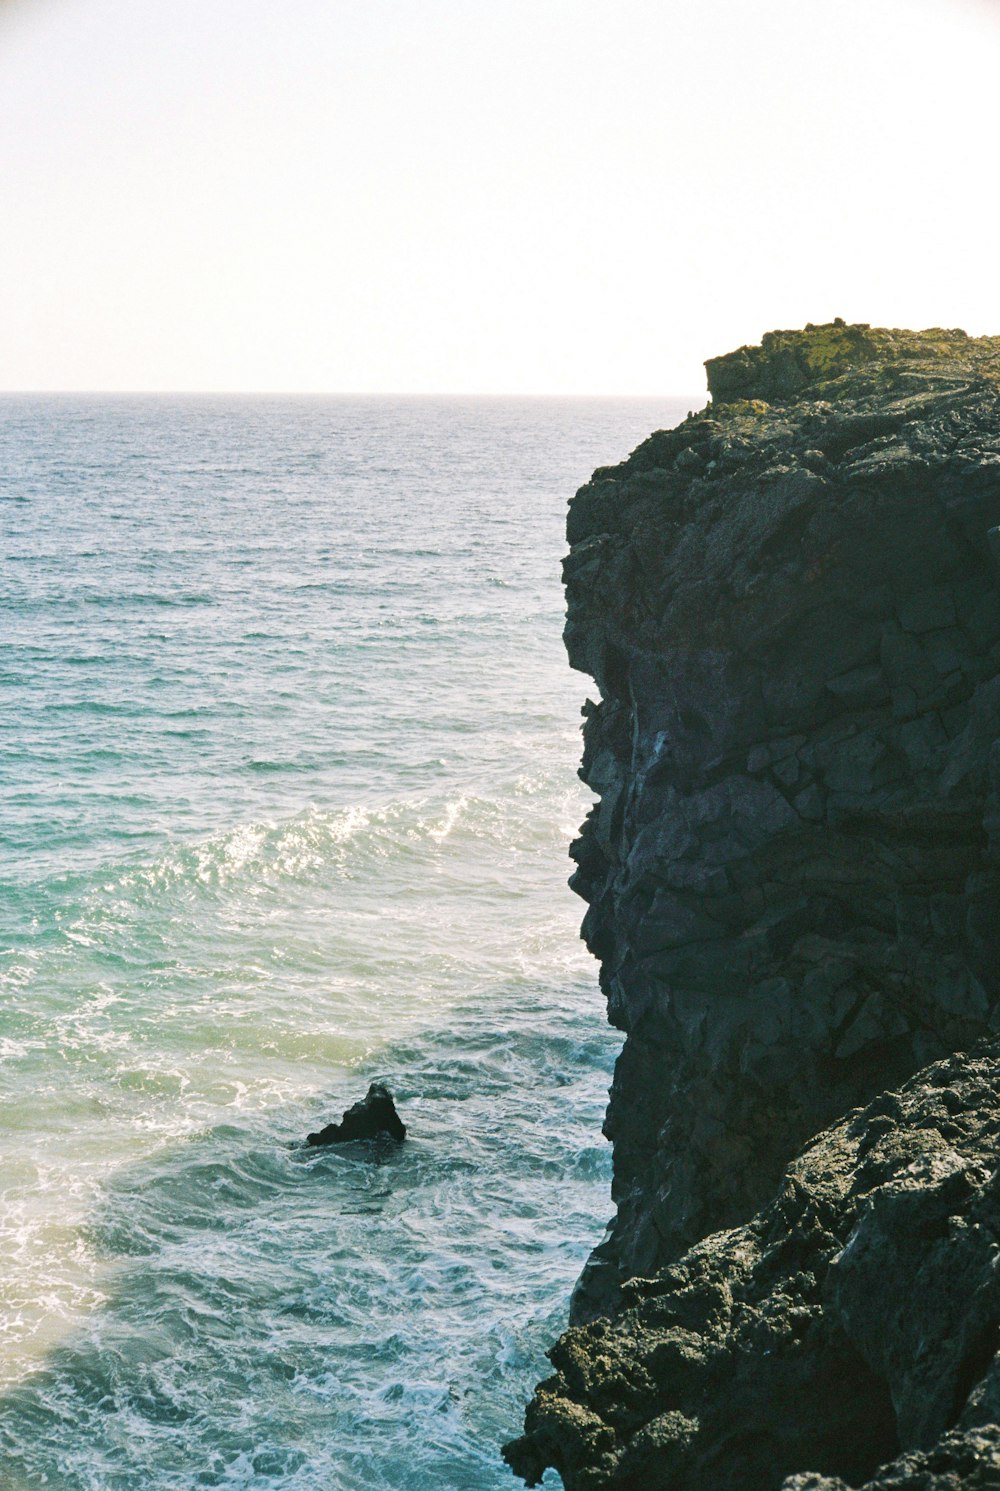 eine Person, die am Rande einer Klippe neben dem Meer steht